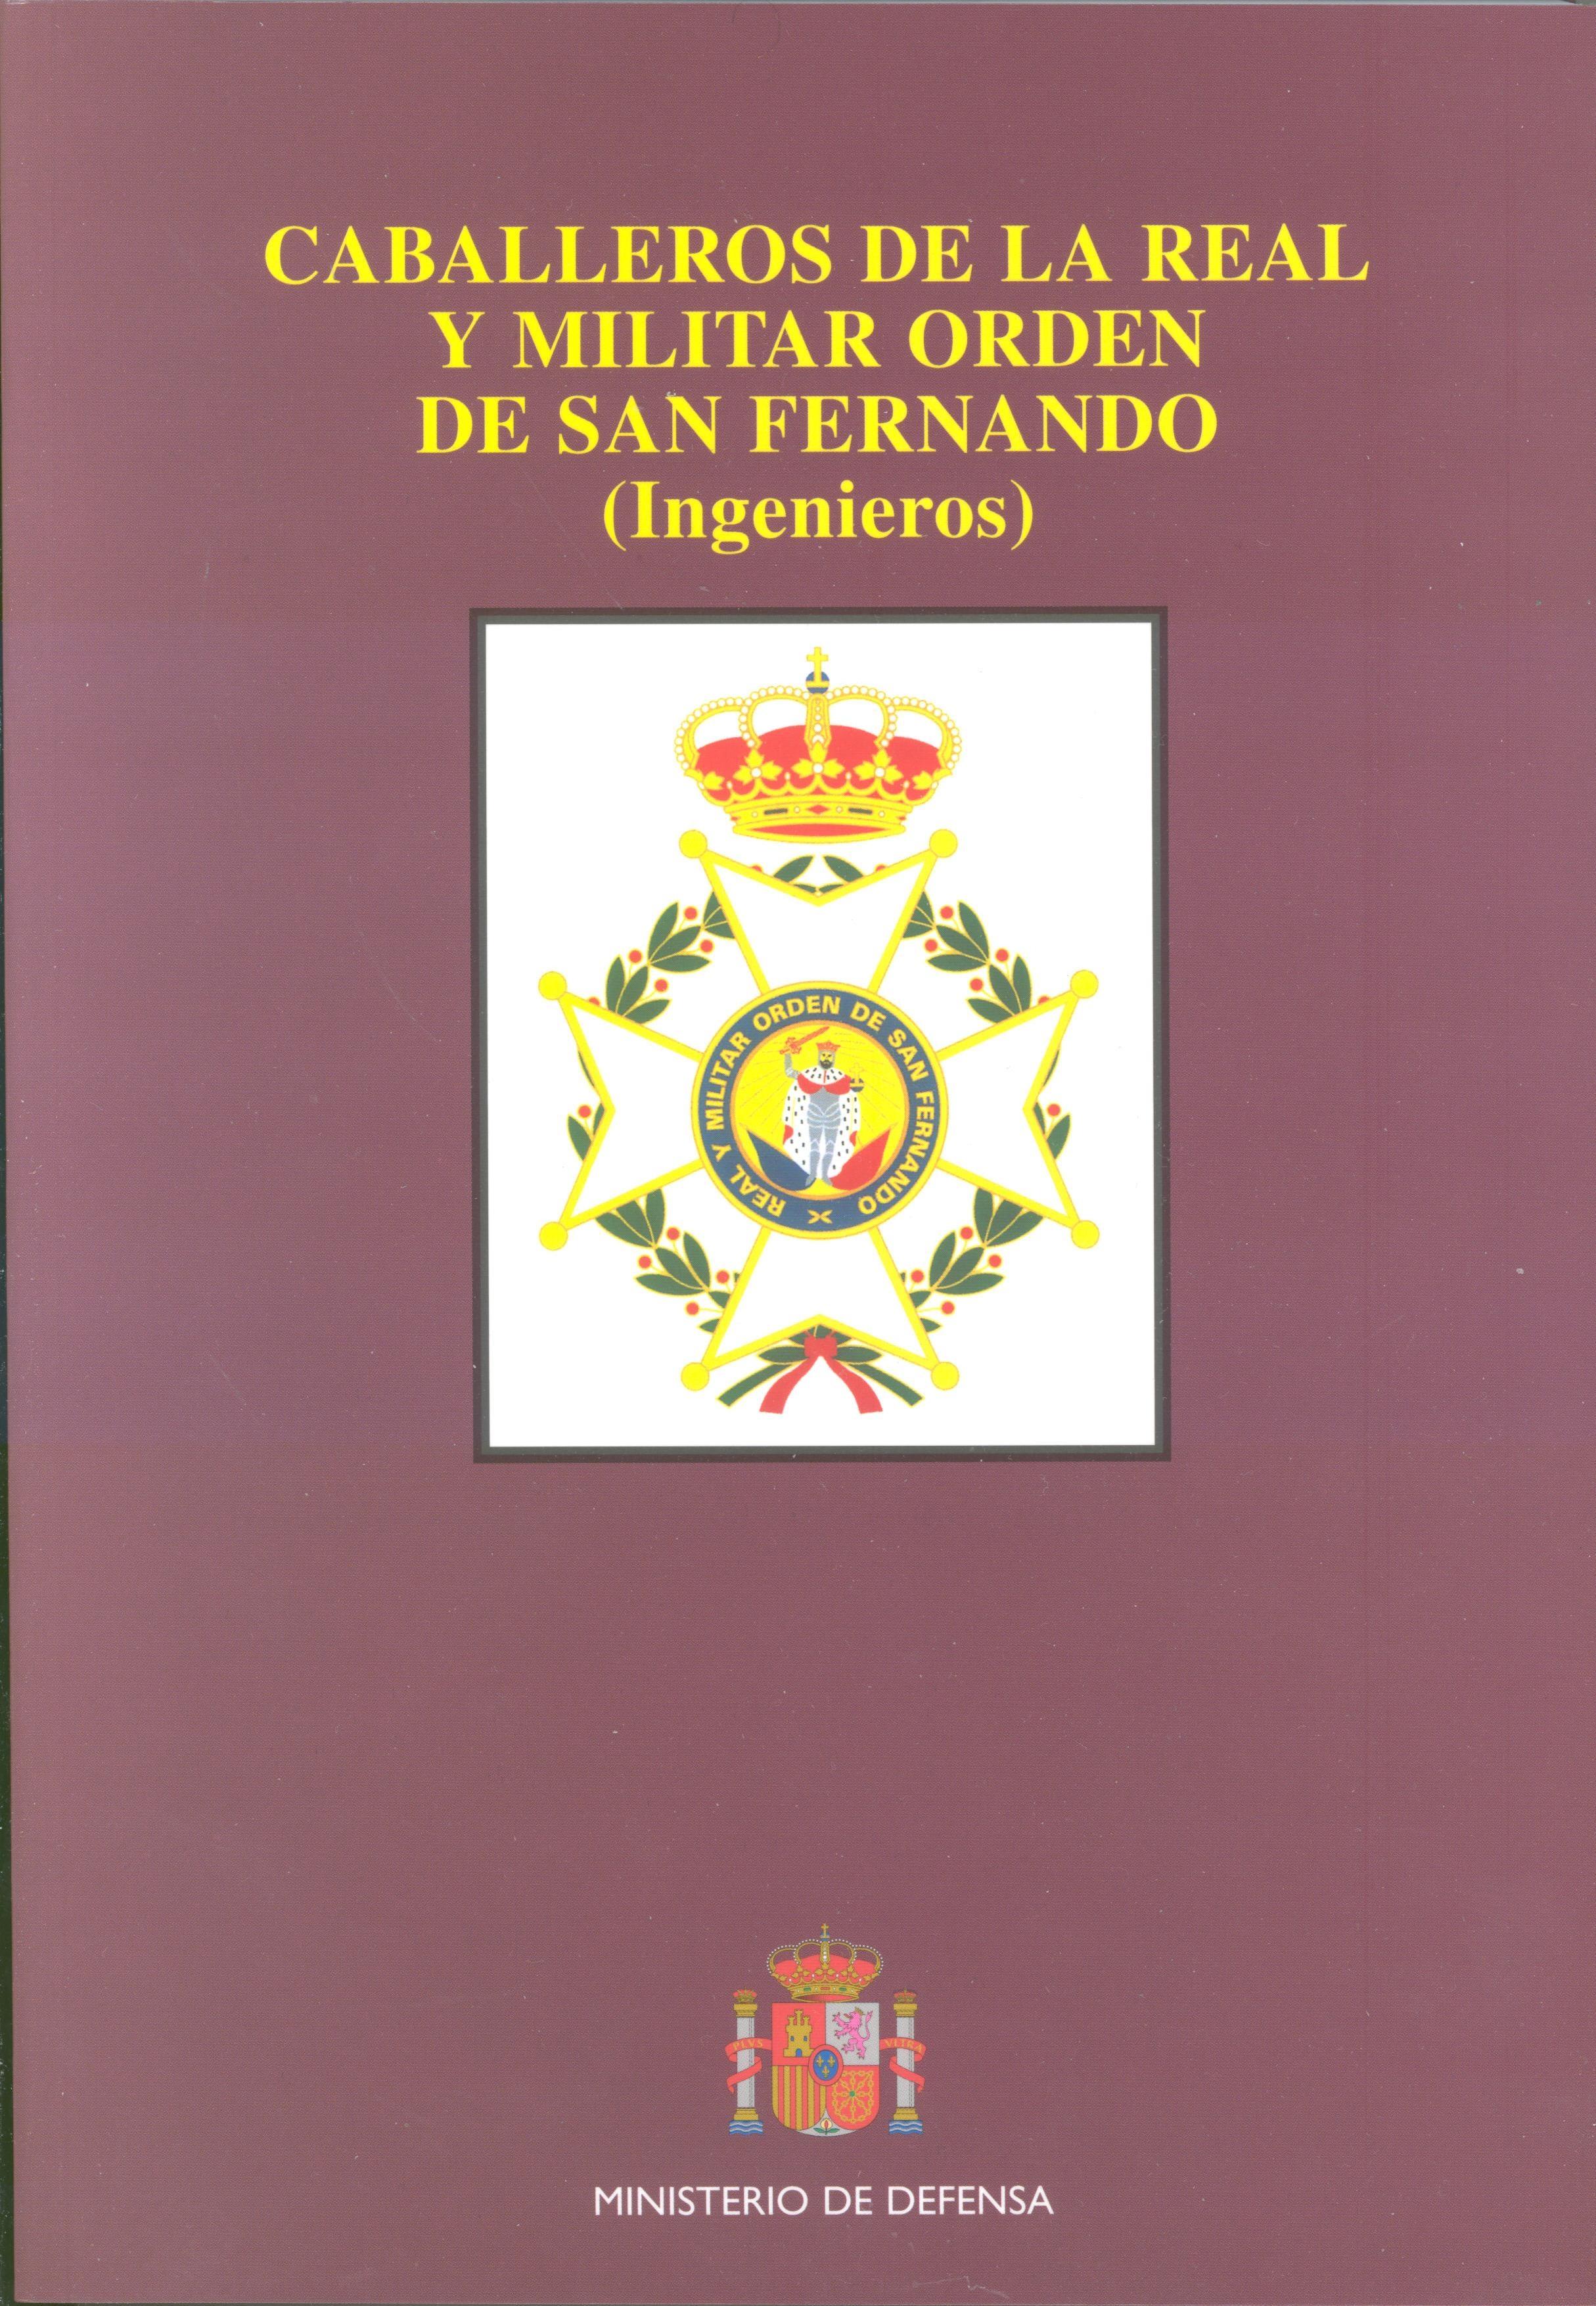 Caballeros de la real y militar orden de San Fernando "(Intendencia, Cuerpos comunes y Cuerpos disueltos)". 